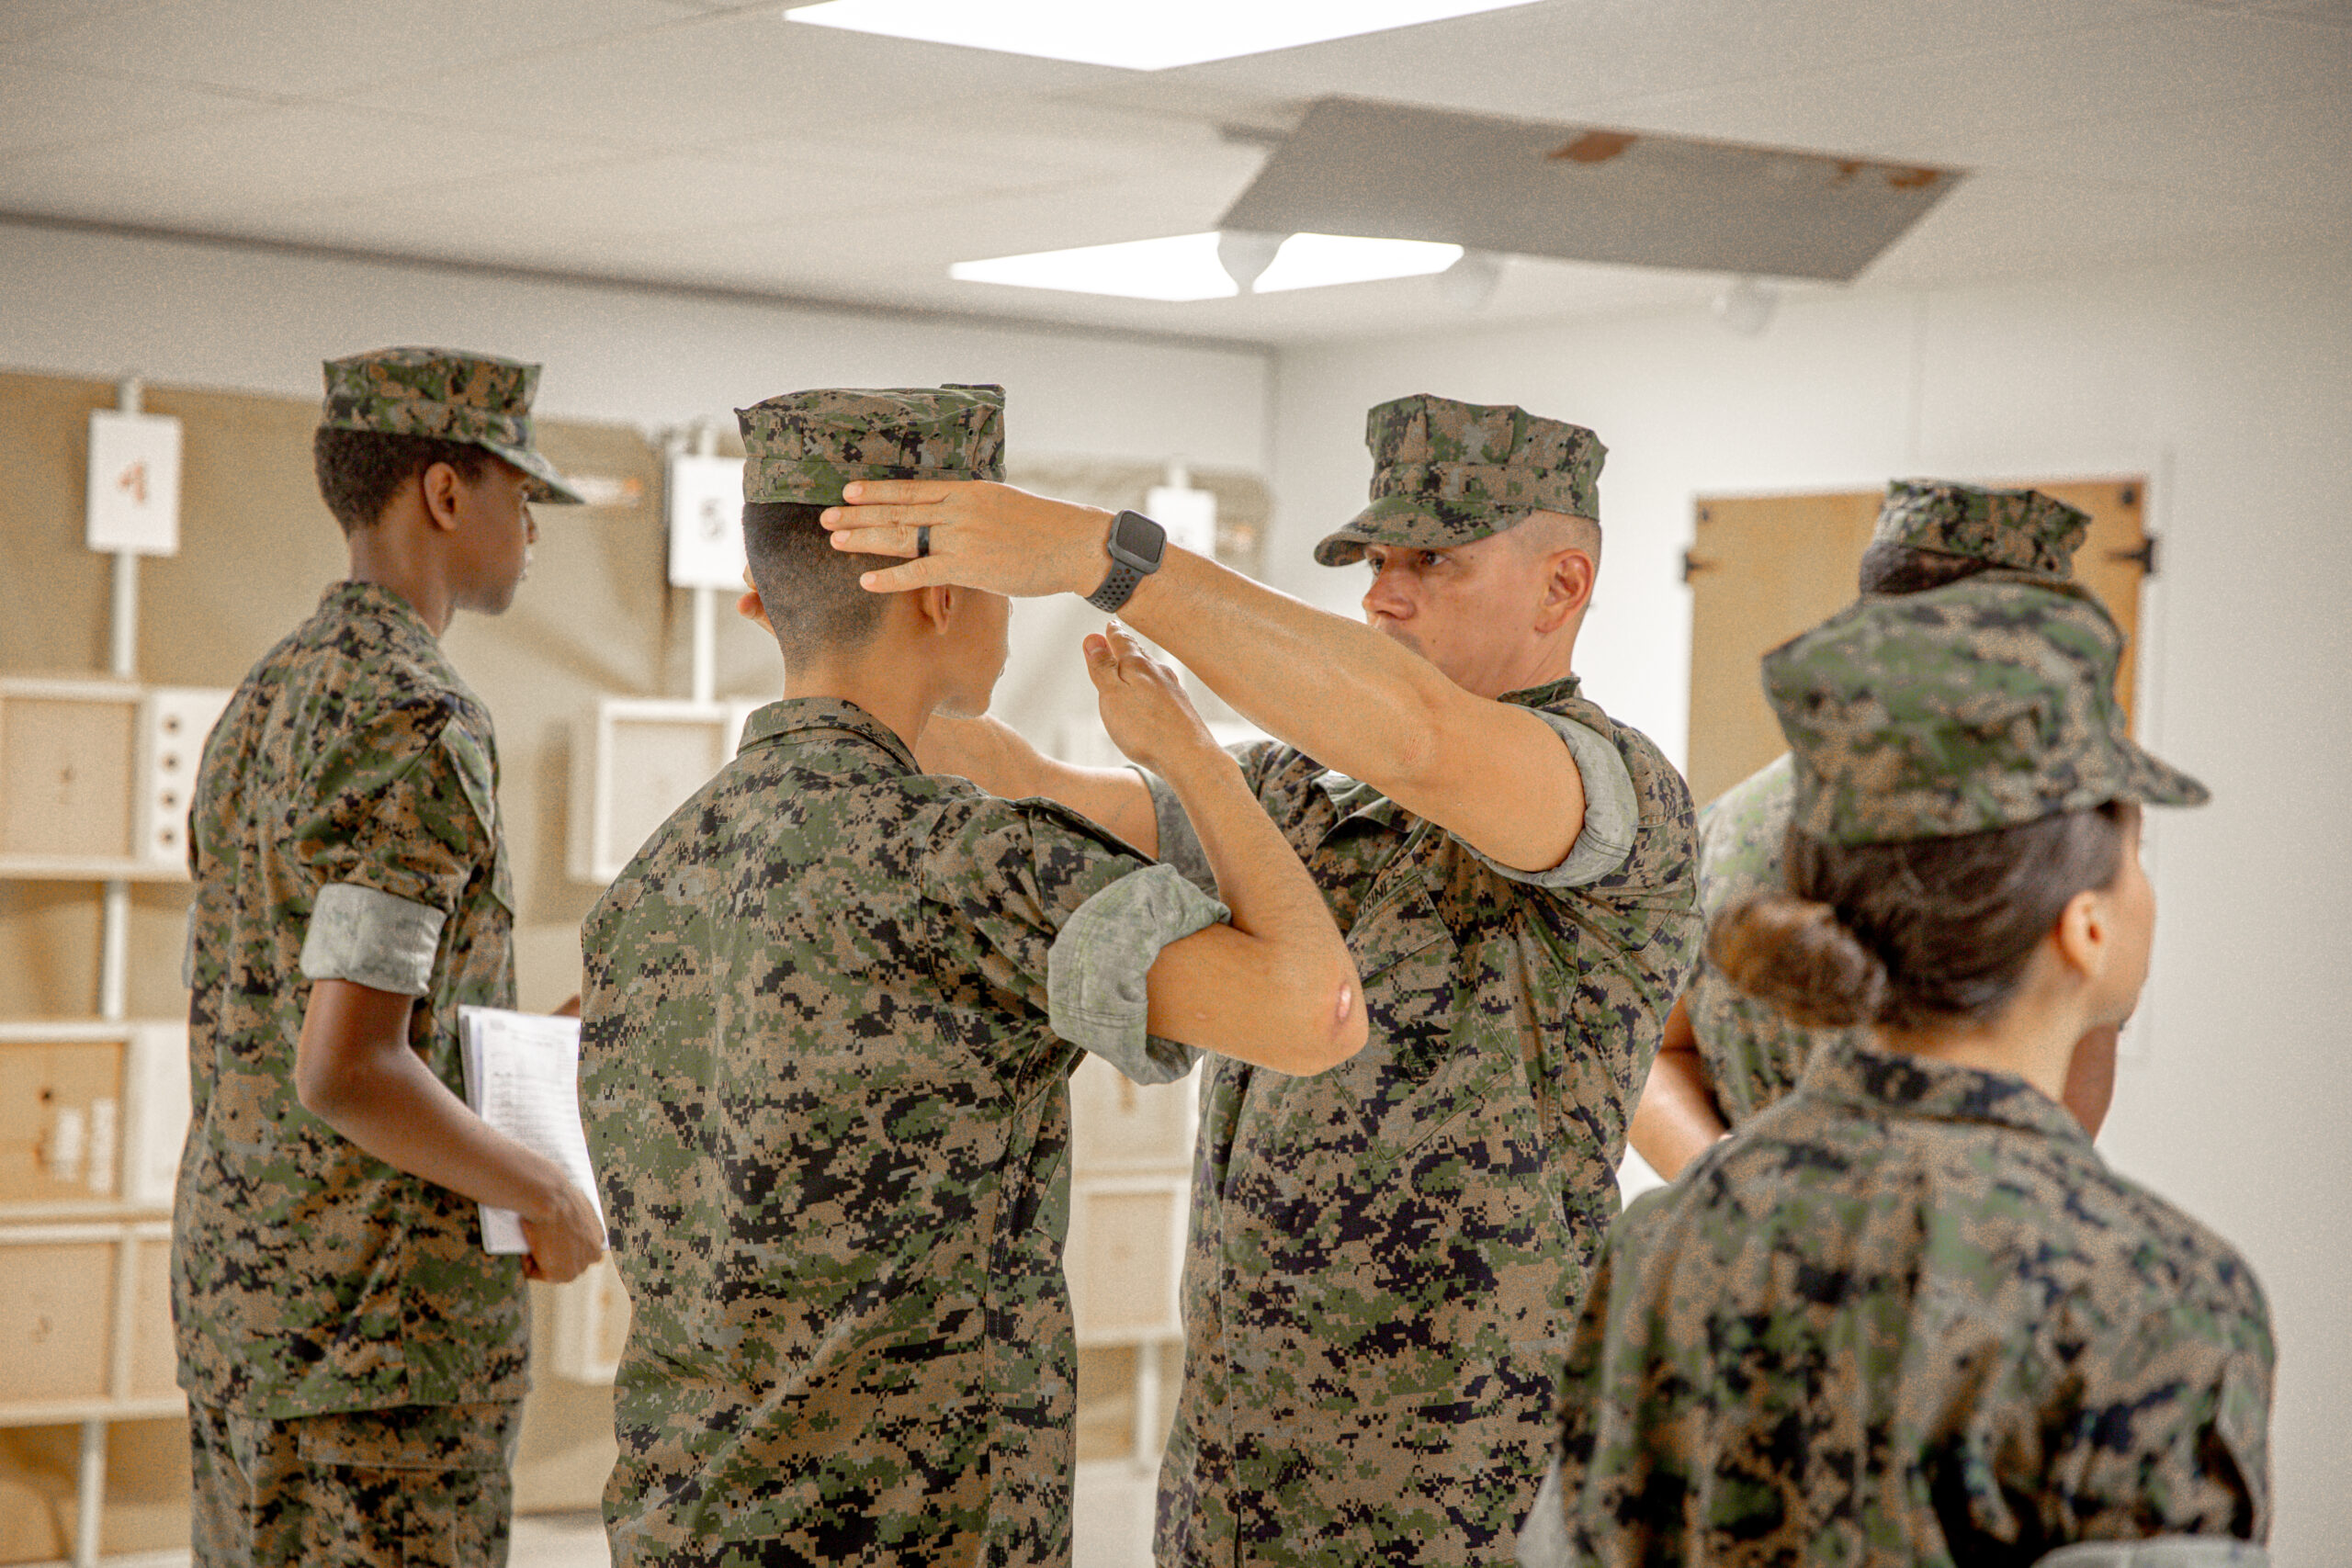 Hernandez adjusting the cover for a cadet during uniform inspection